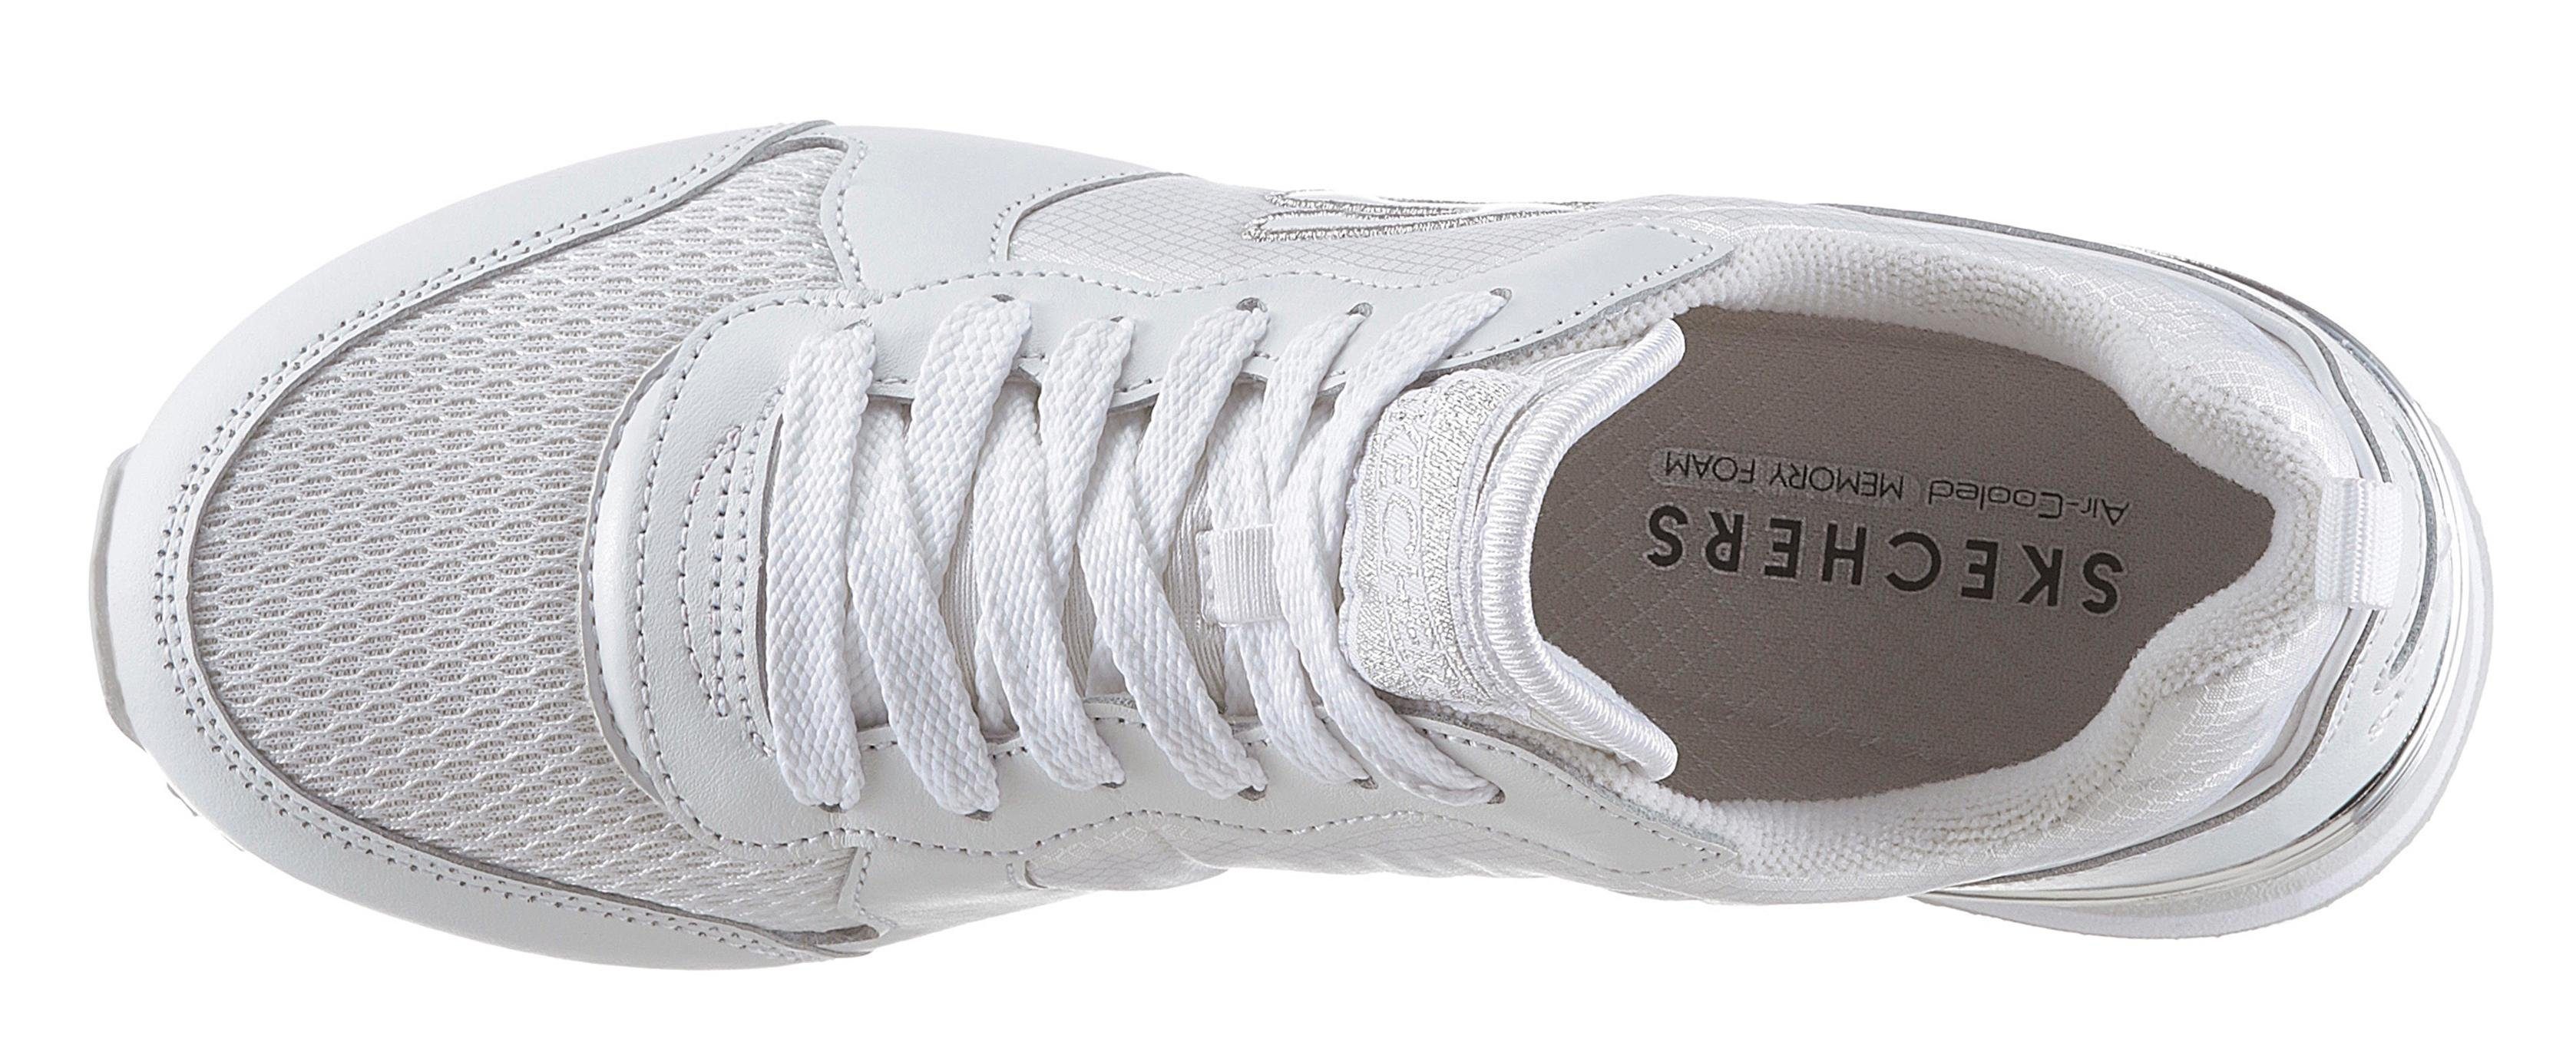 silber mit Sneaker weiß / Gold´n Metallic-Details Gurl Skechers